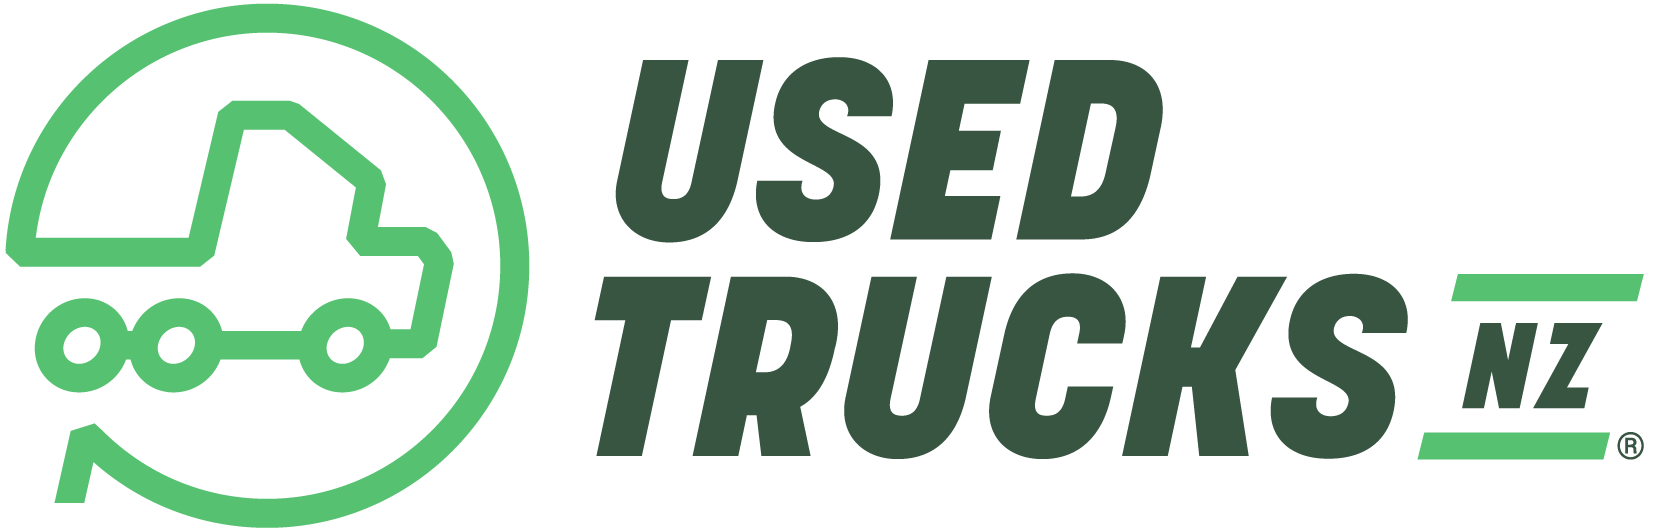 Used Trucks NZ